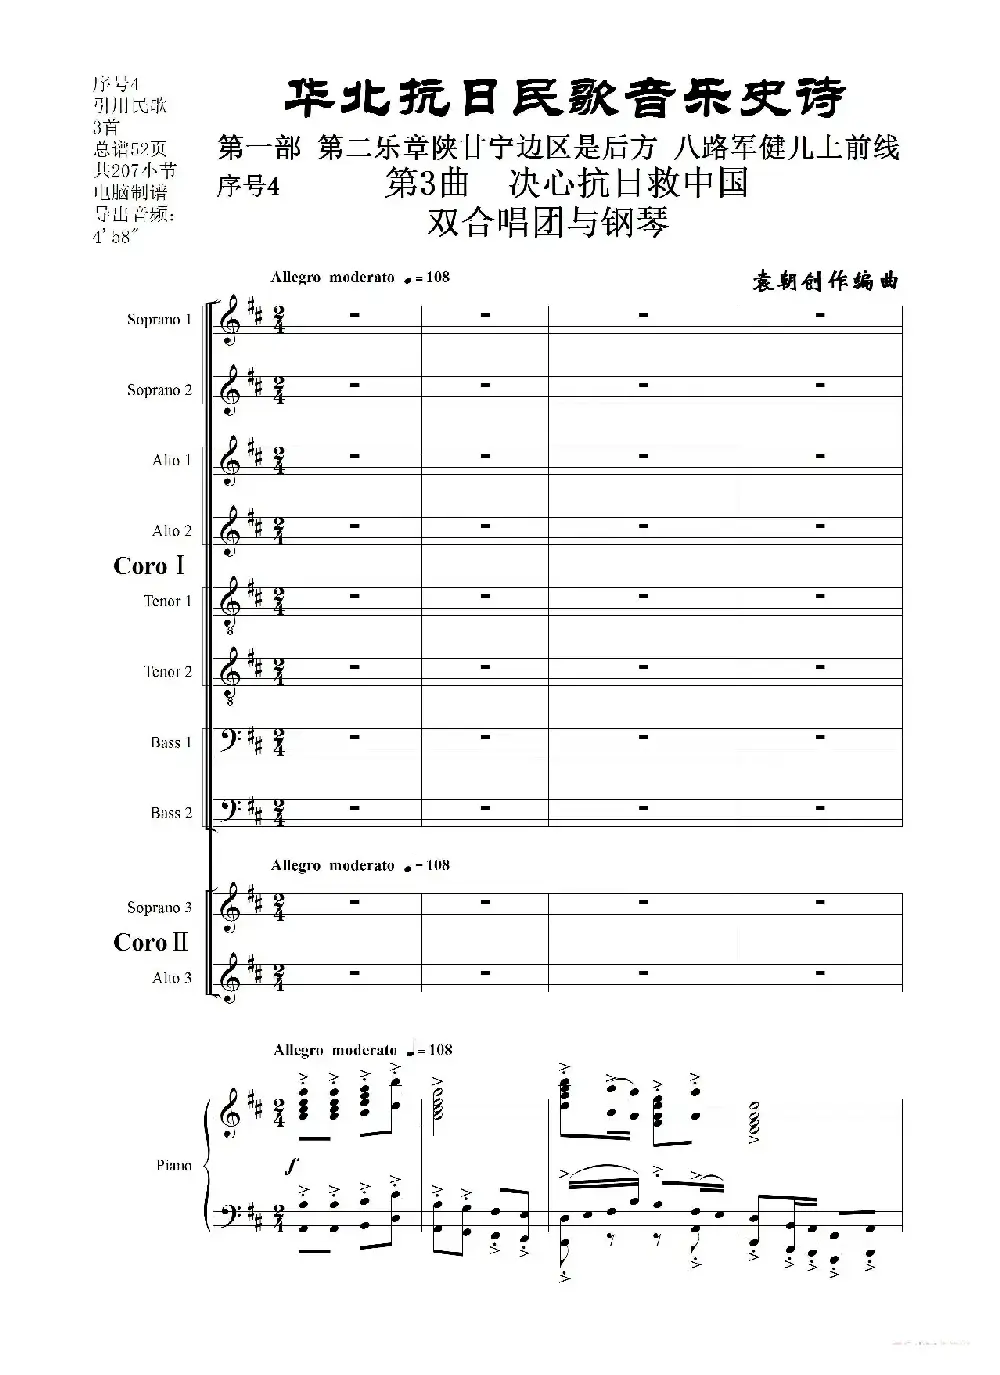 重发：序号4第3曲《决心抗日救中国》双合唱团与钢琴